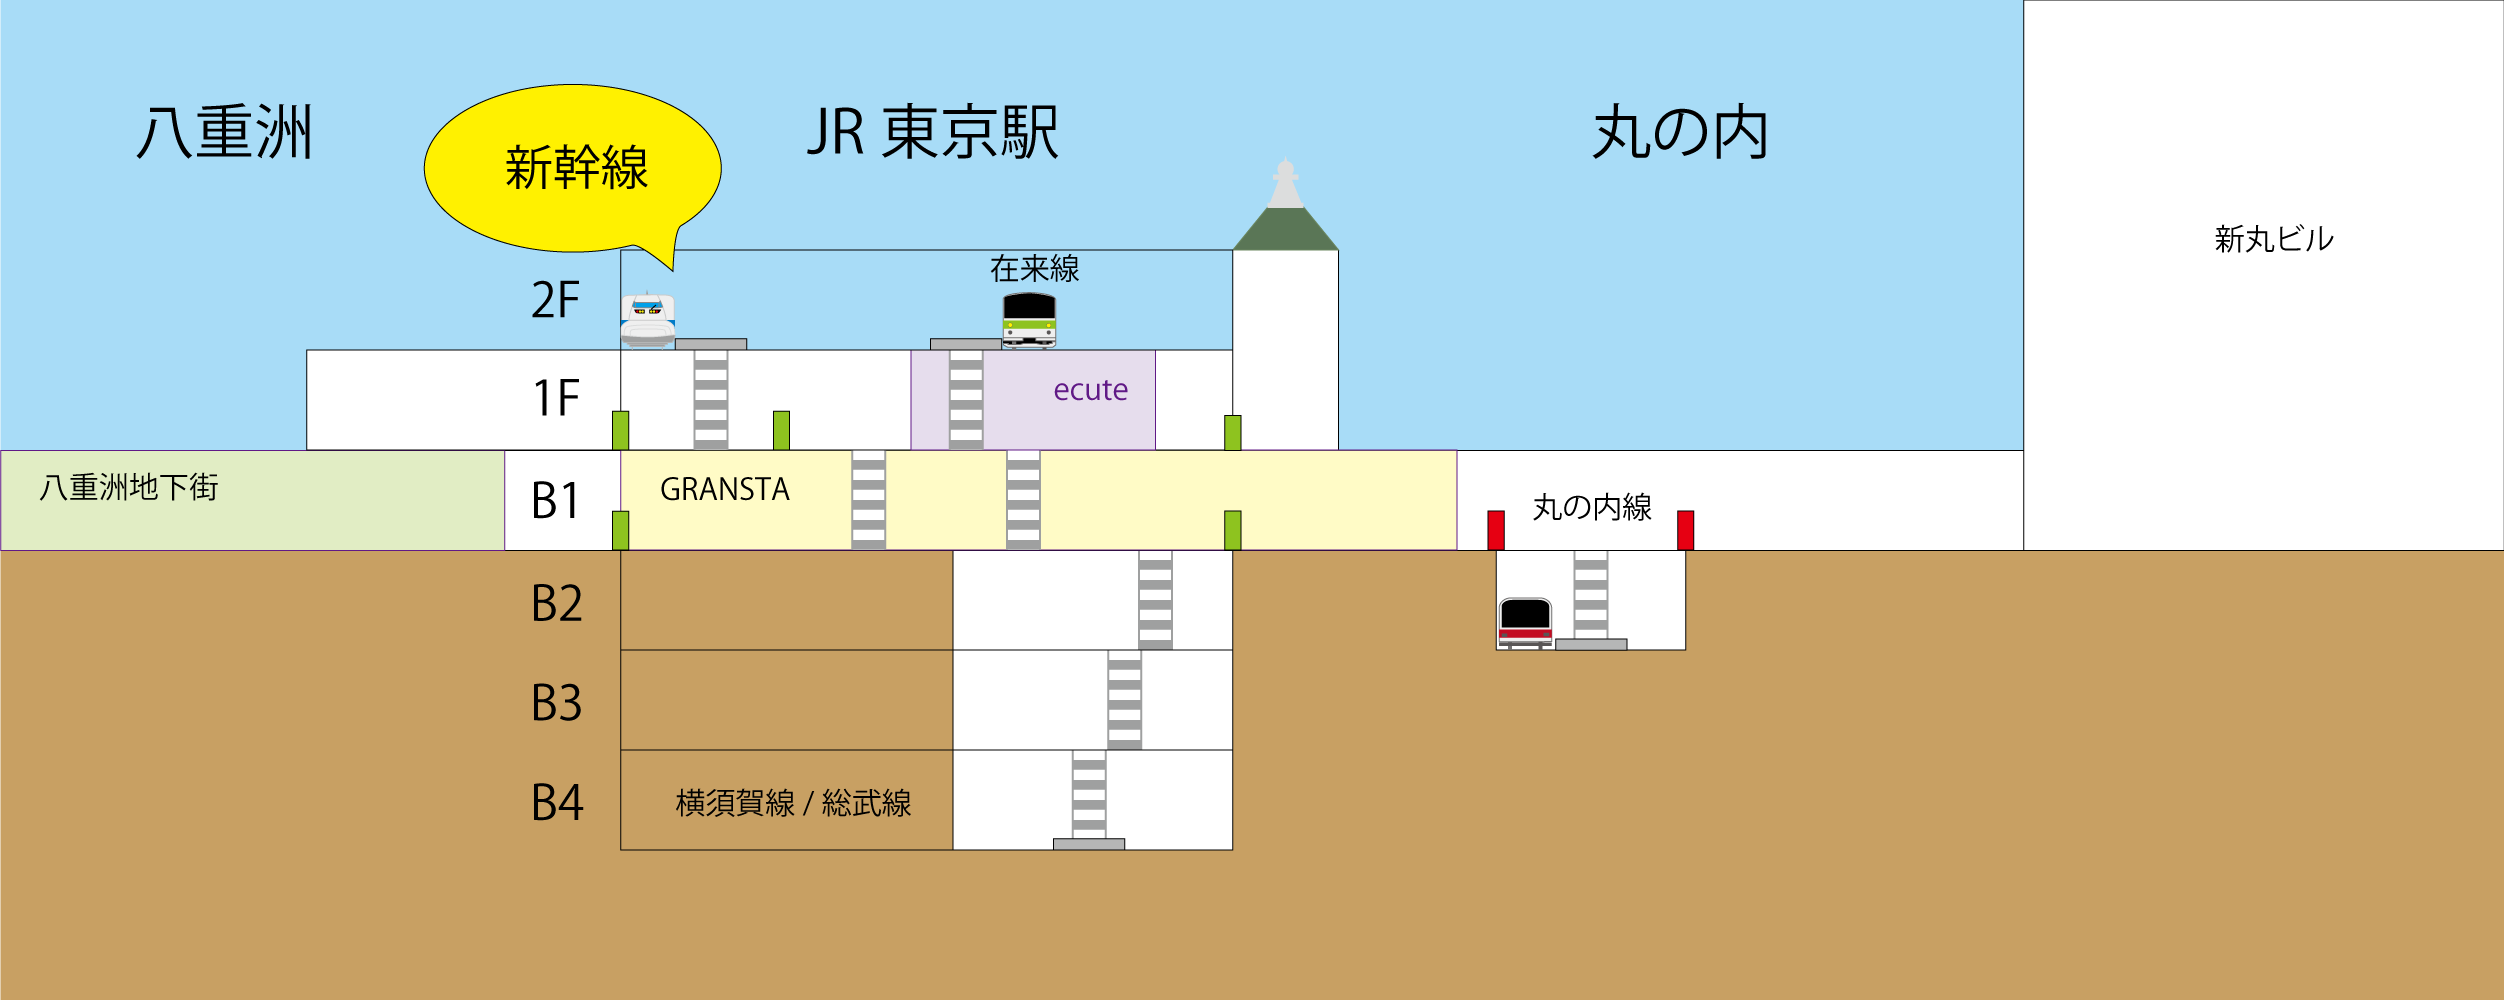 とにかく分かりやすく東京駅の新幹線乗り場 ホーム へ案内します 東京スパイシー